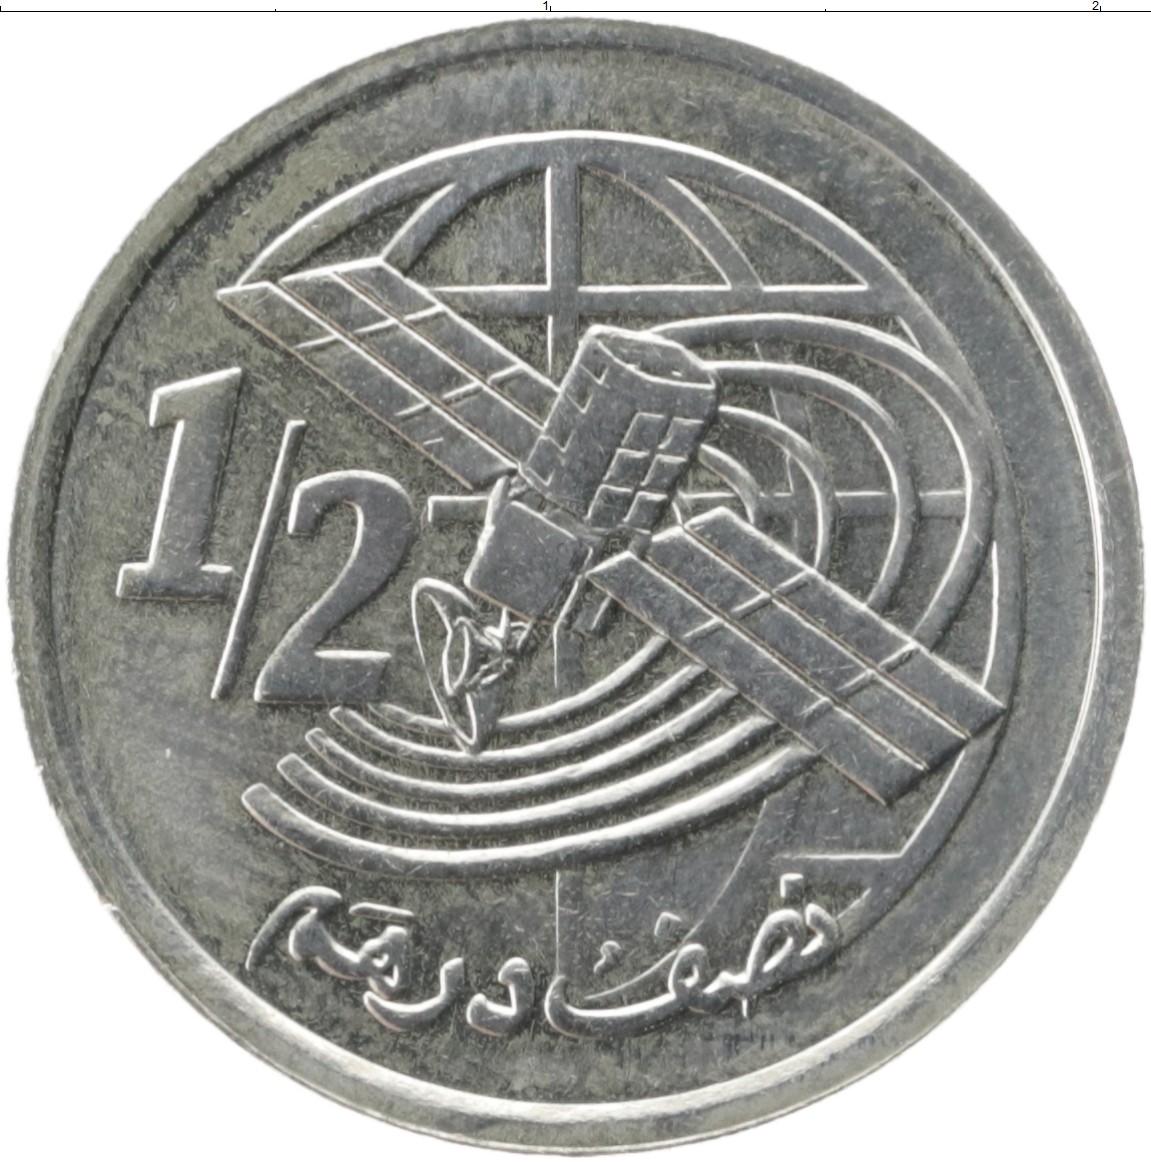 2 дирхама. 1/2 Дирхама 2002. 2 Дирхама монета. Монета Марокко 2002. 1/2 Дирхама Марокканская монета.